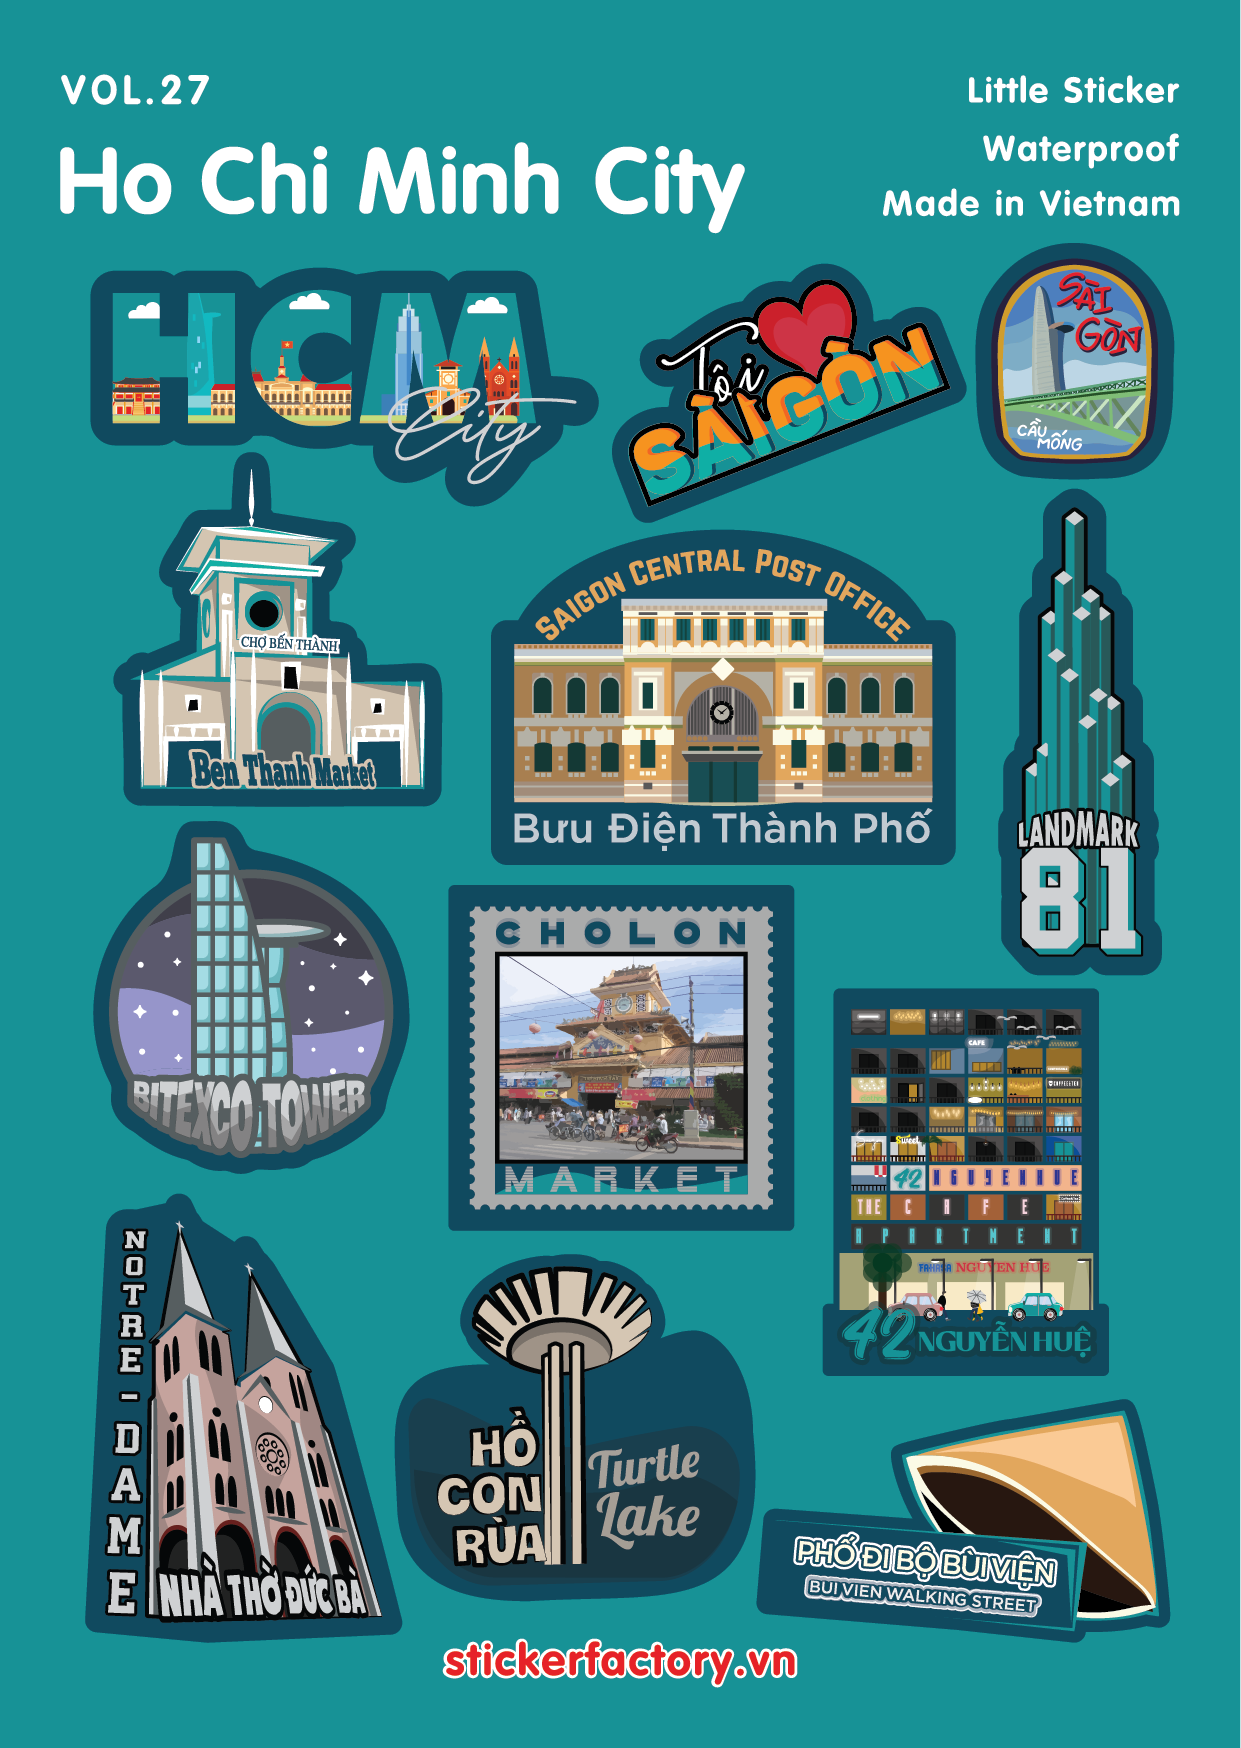 Sai Gon City Little A6 Stickers Set